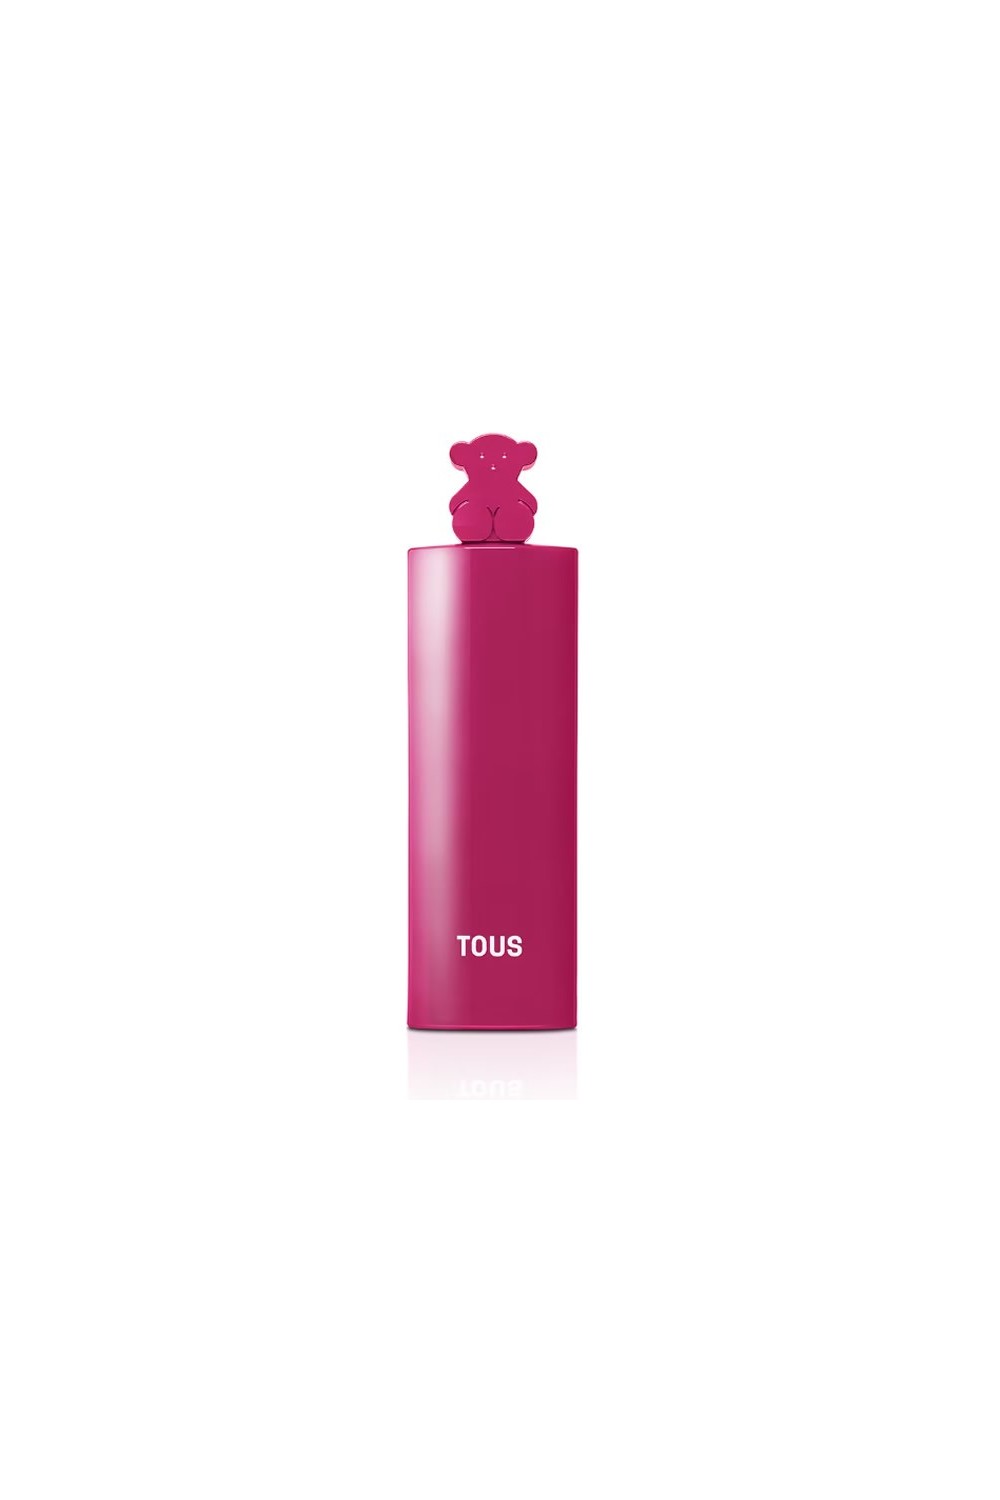 Tous More More Pink Eau De Toilette Spray 90ml